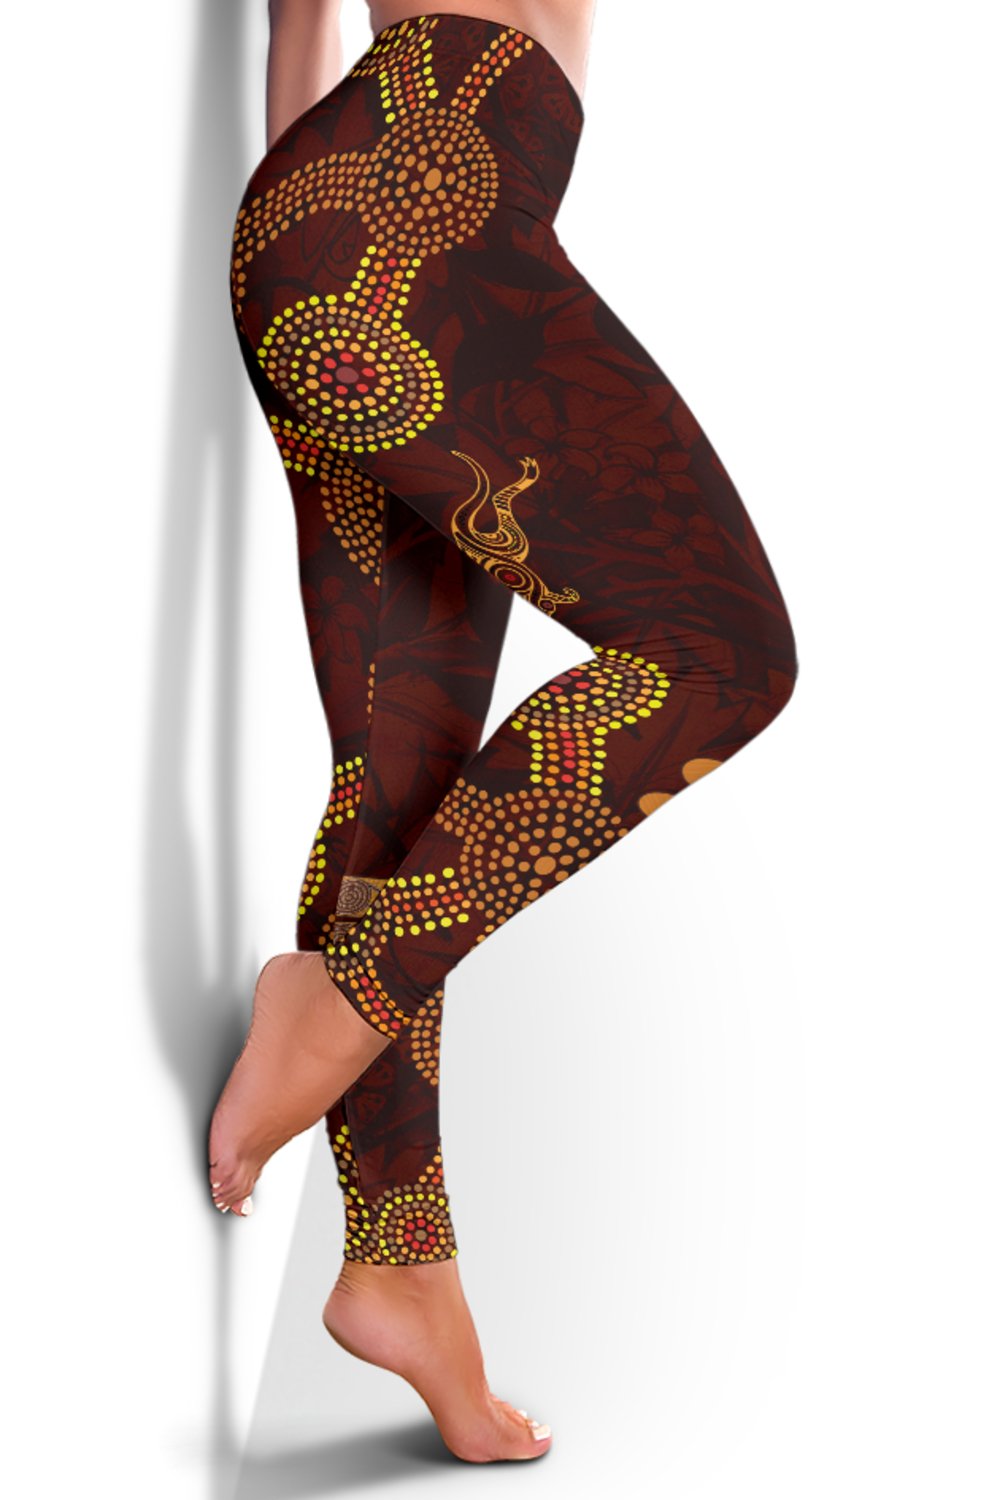 leggings-aboriginal-dot-painting-kangaroo-pants-women